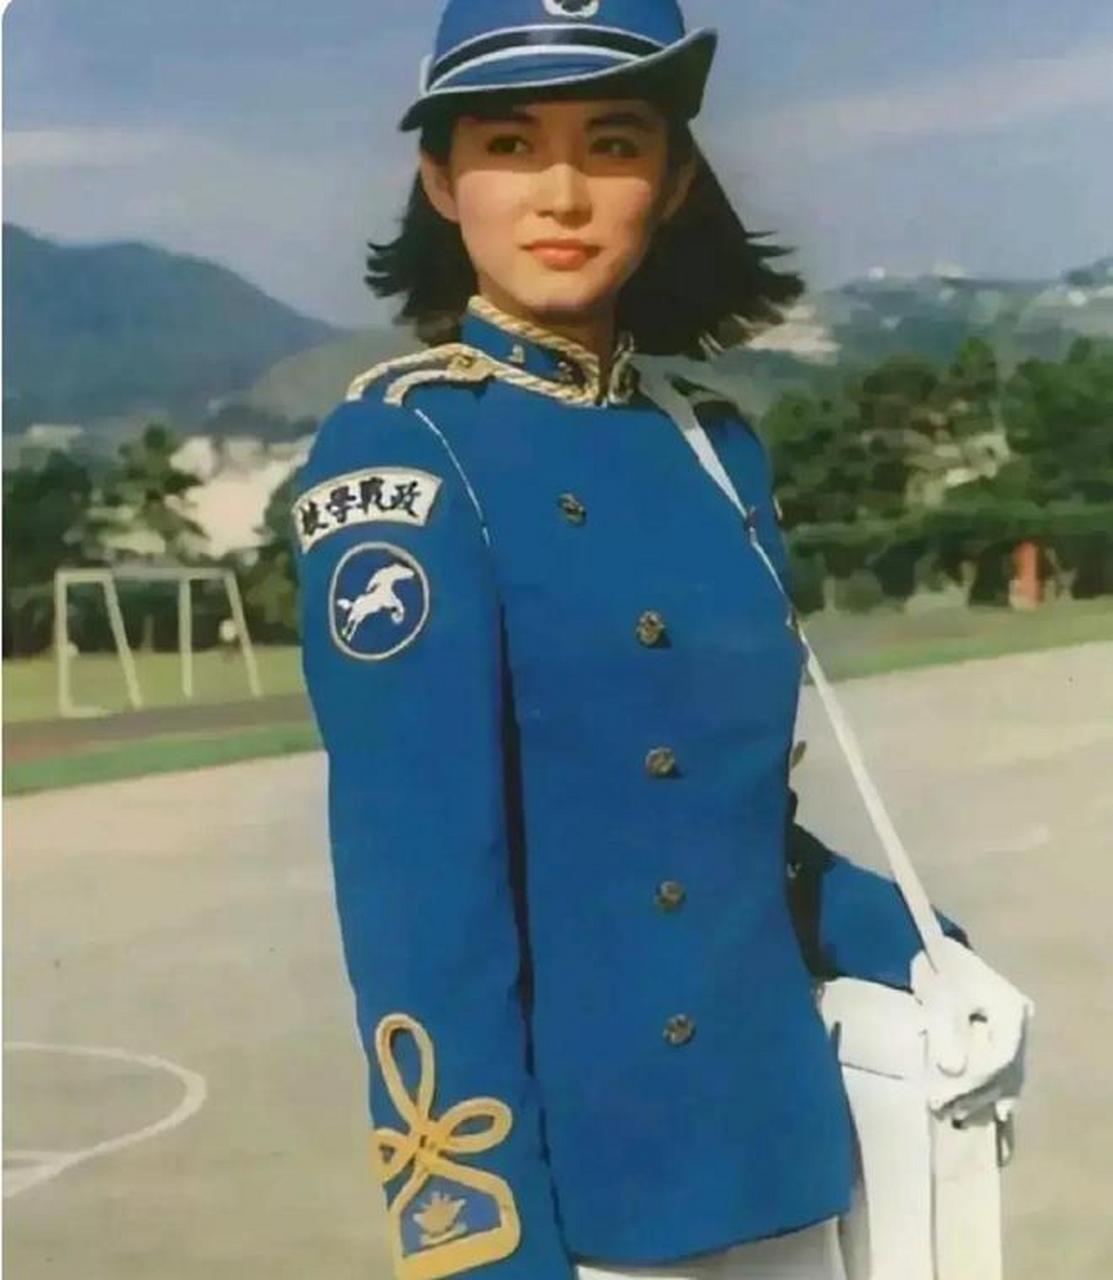 林青霞年轻时的照片被曝光,照片中她穿着一套天蓝色的制服,气质非常